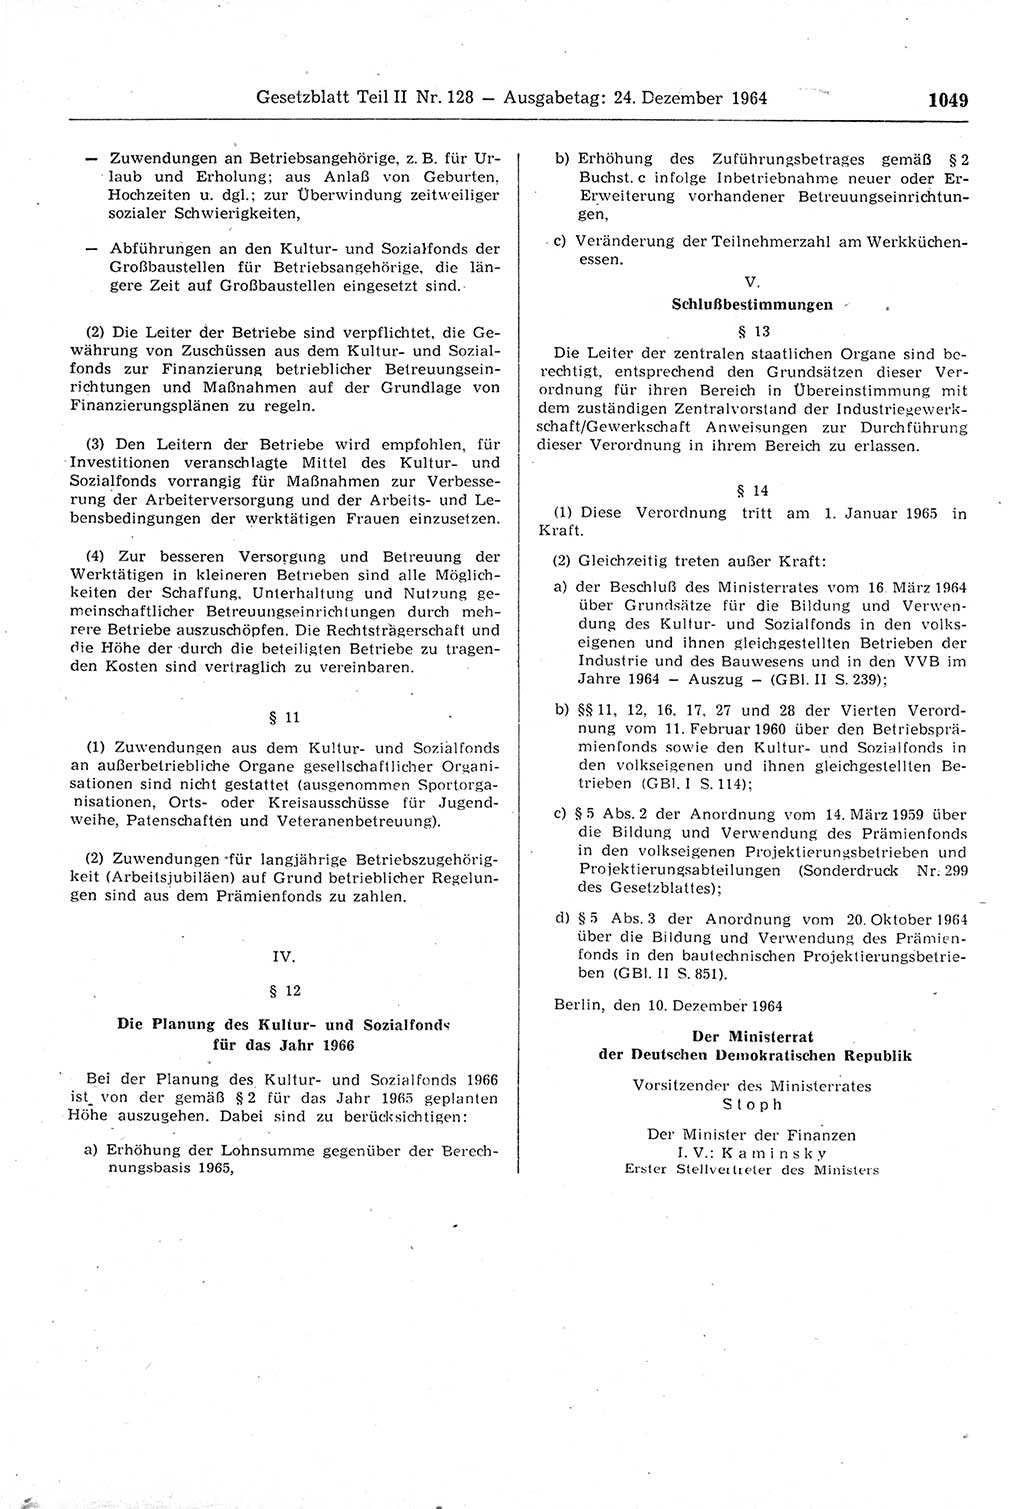 Gesetzblatt (GBl.) der Deutschen Demokratischen Republik (DDR) Teil ⅠⅠ 1964, Seite 1049 (GBl. DDR ⅠⅠ 1964, S. 1049)